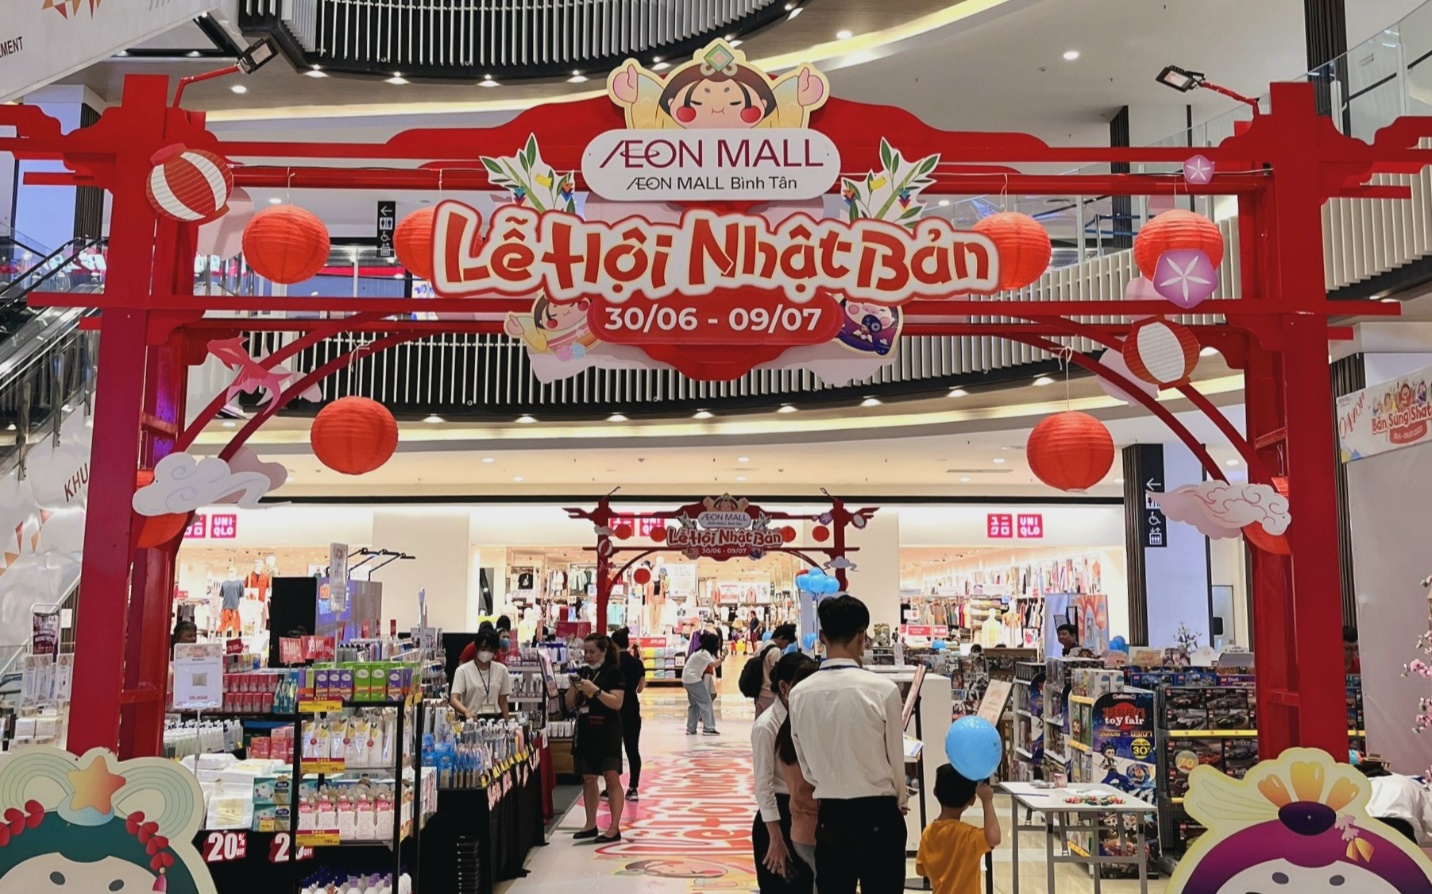 UNIQLO khai trương cửa hàng thứ 10 tại TTTM Aeon Mall Bình Tân ngày 2212